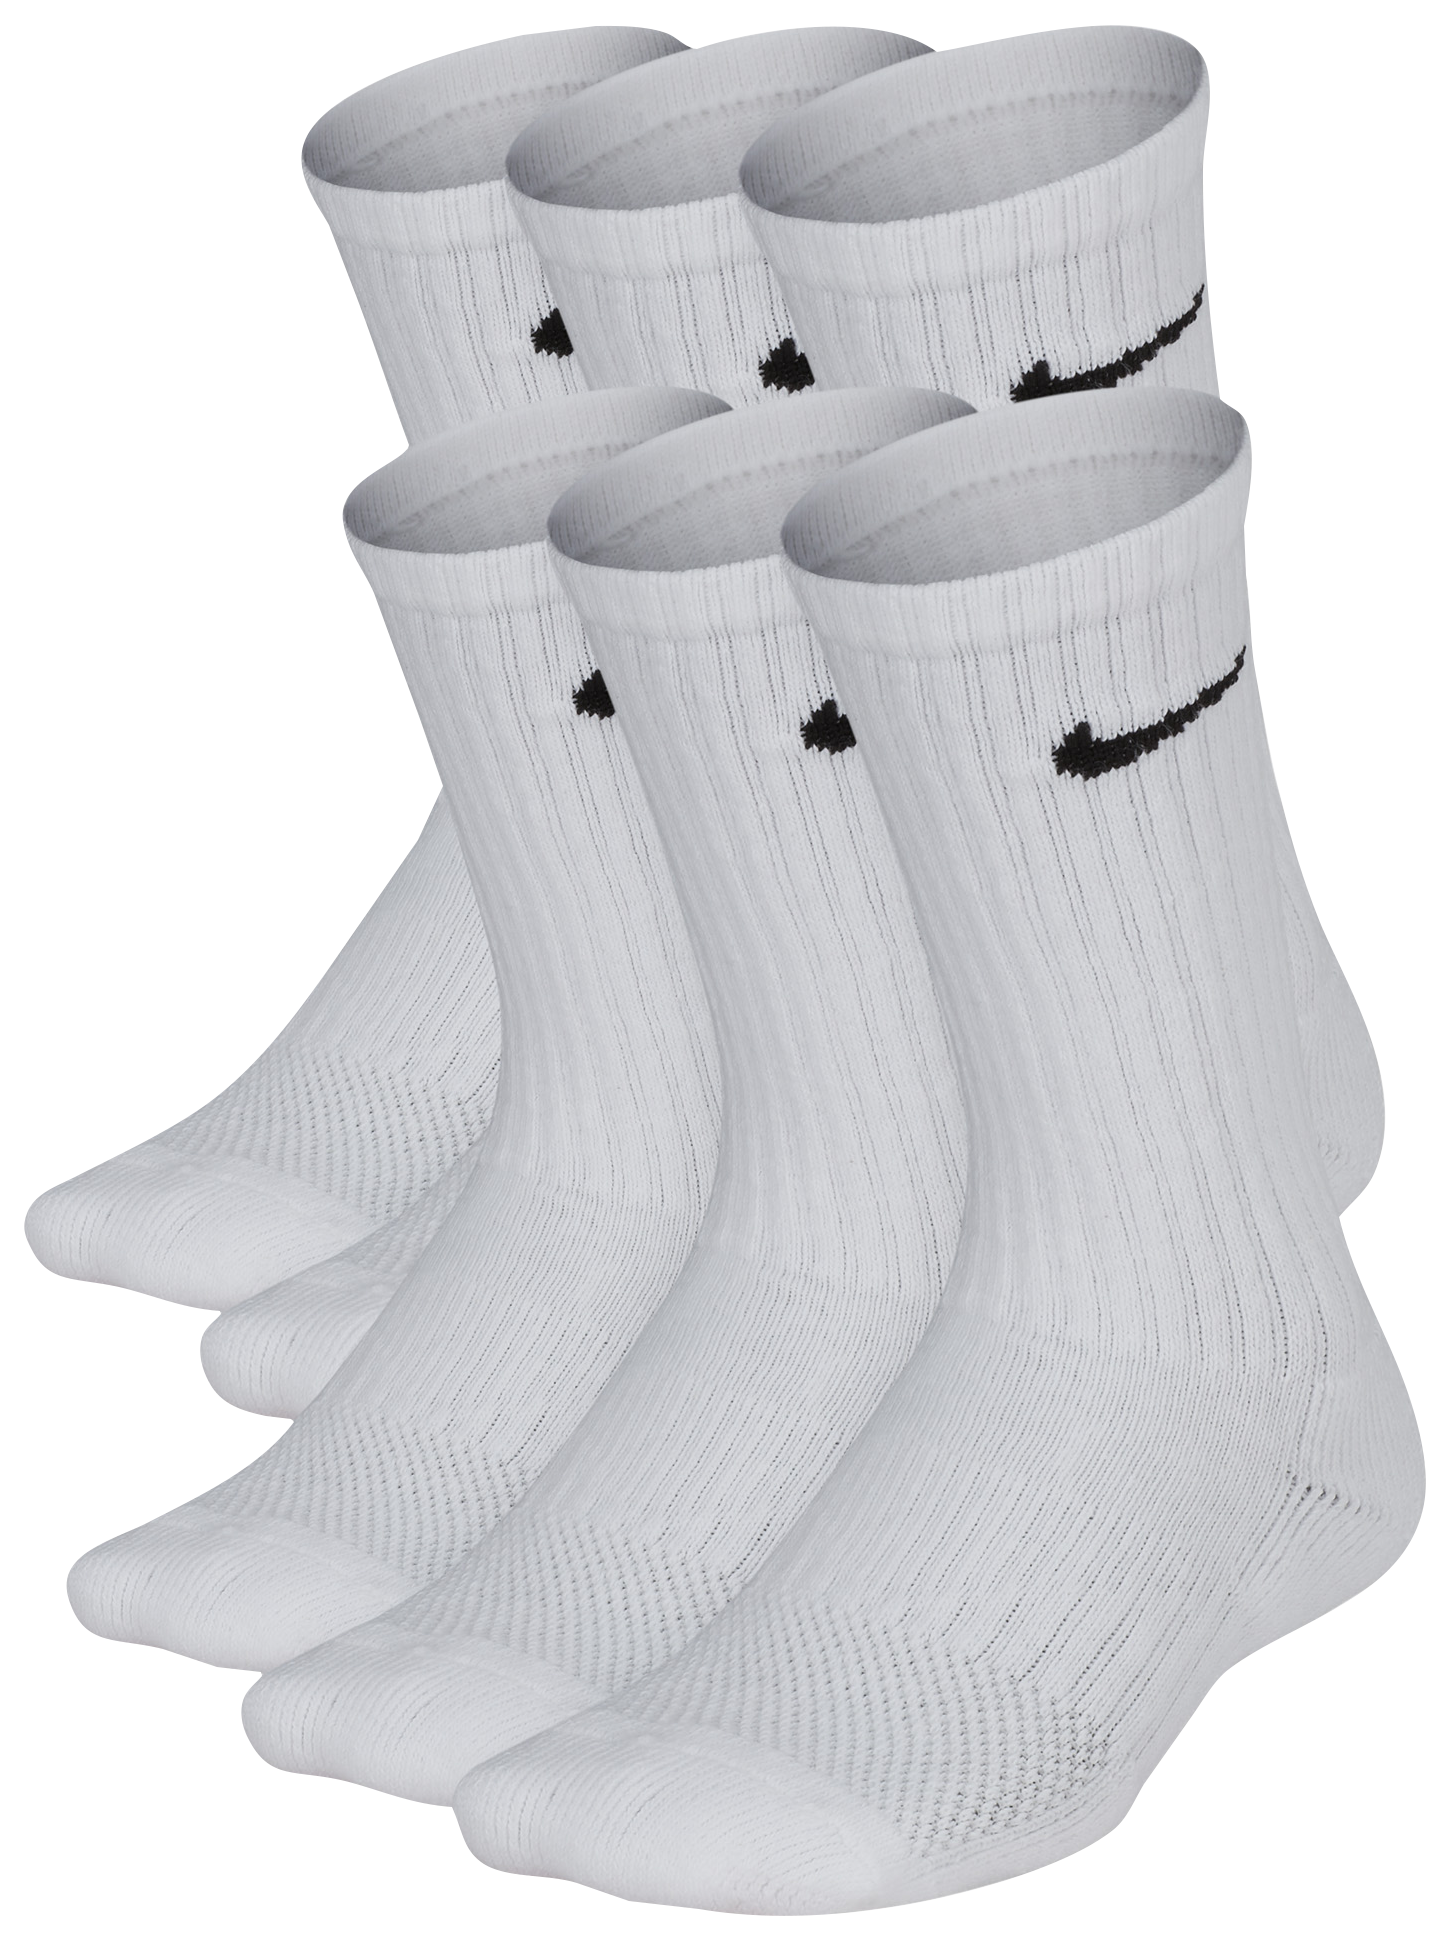 junior nike socks white